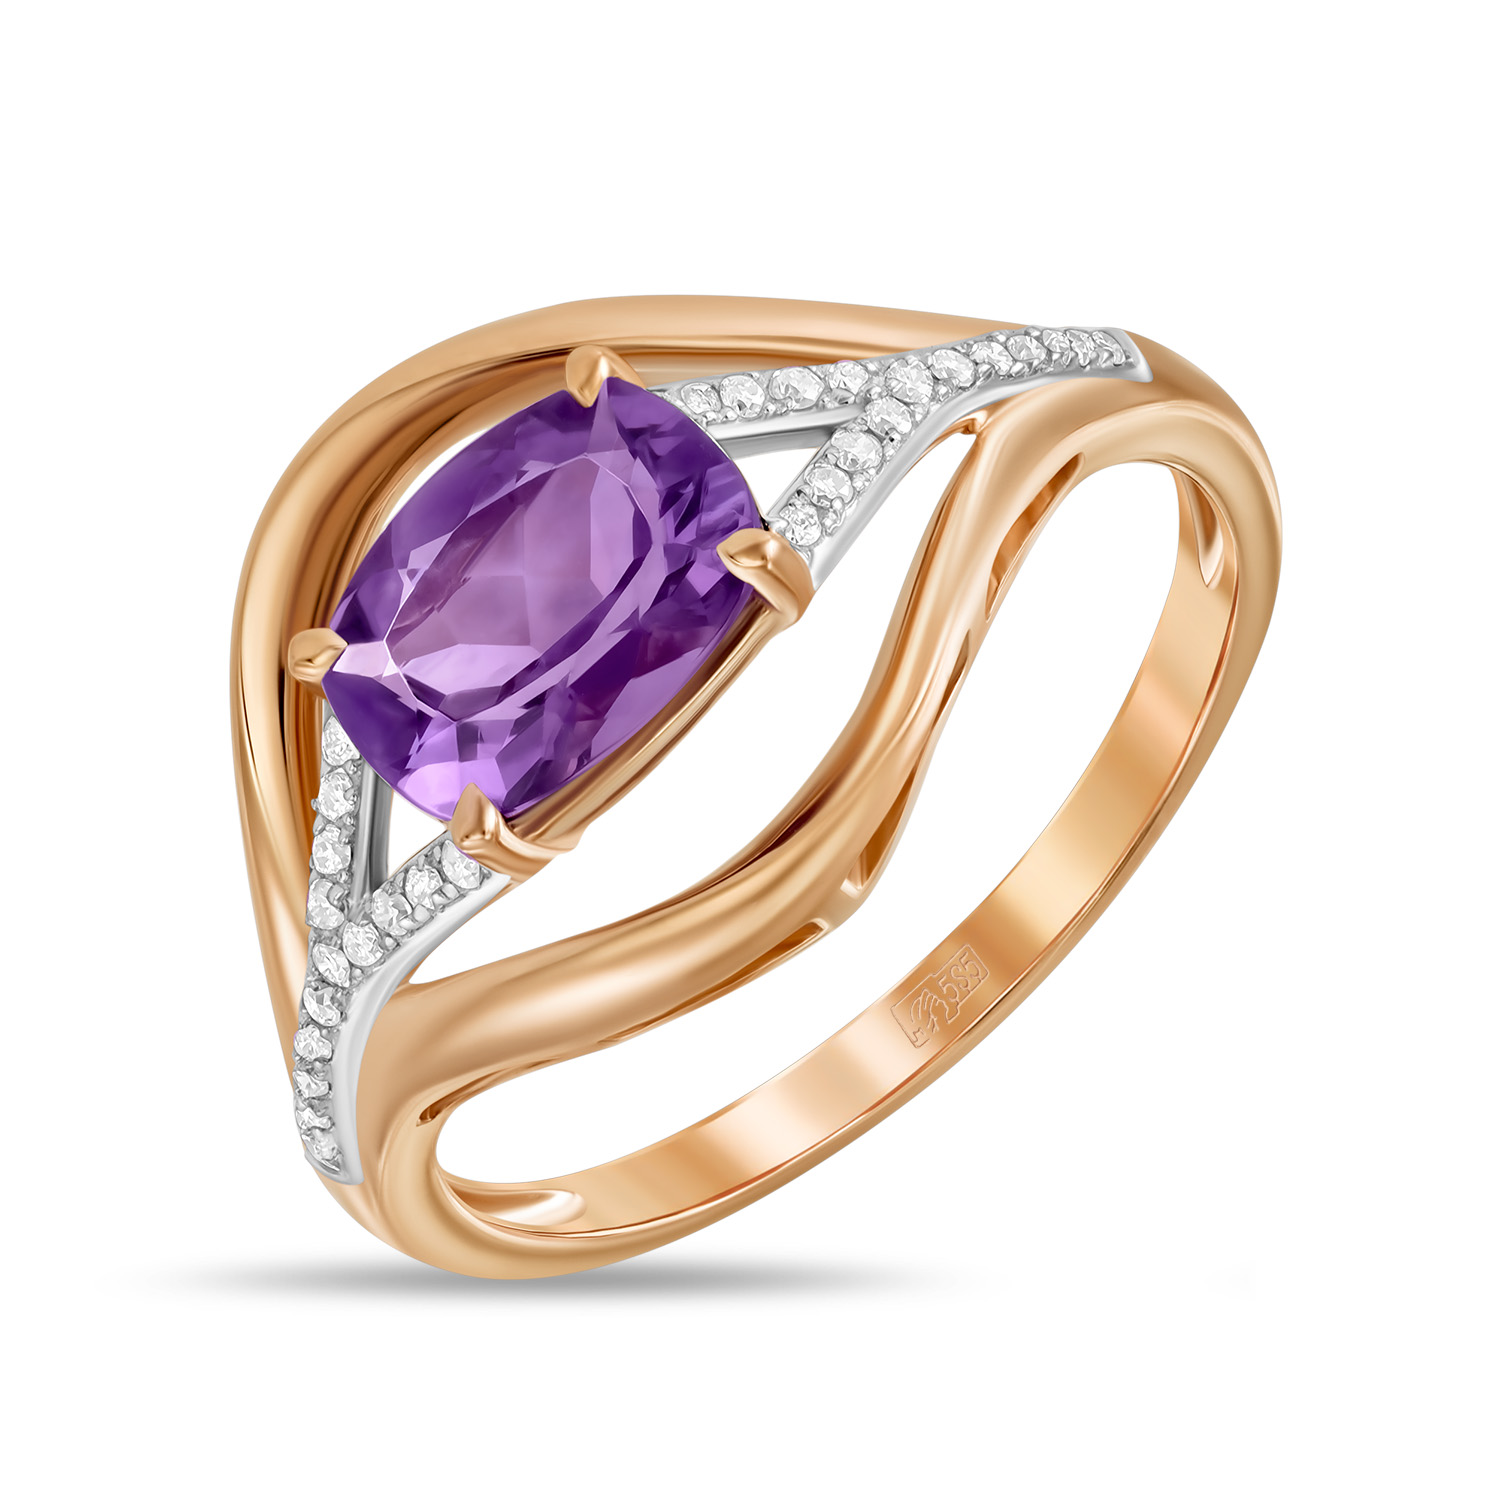 Кольца МЮЗ Золотое кольцо с аметистом и бриллиантами кольца мюз золотое кольцо с аметистом